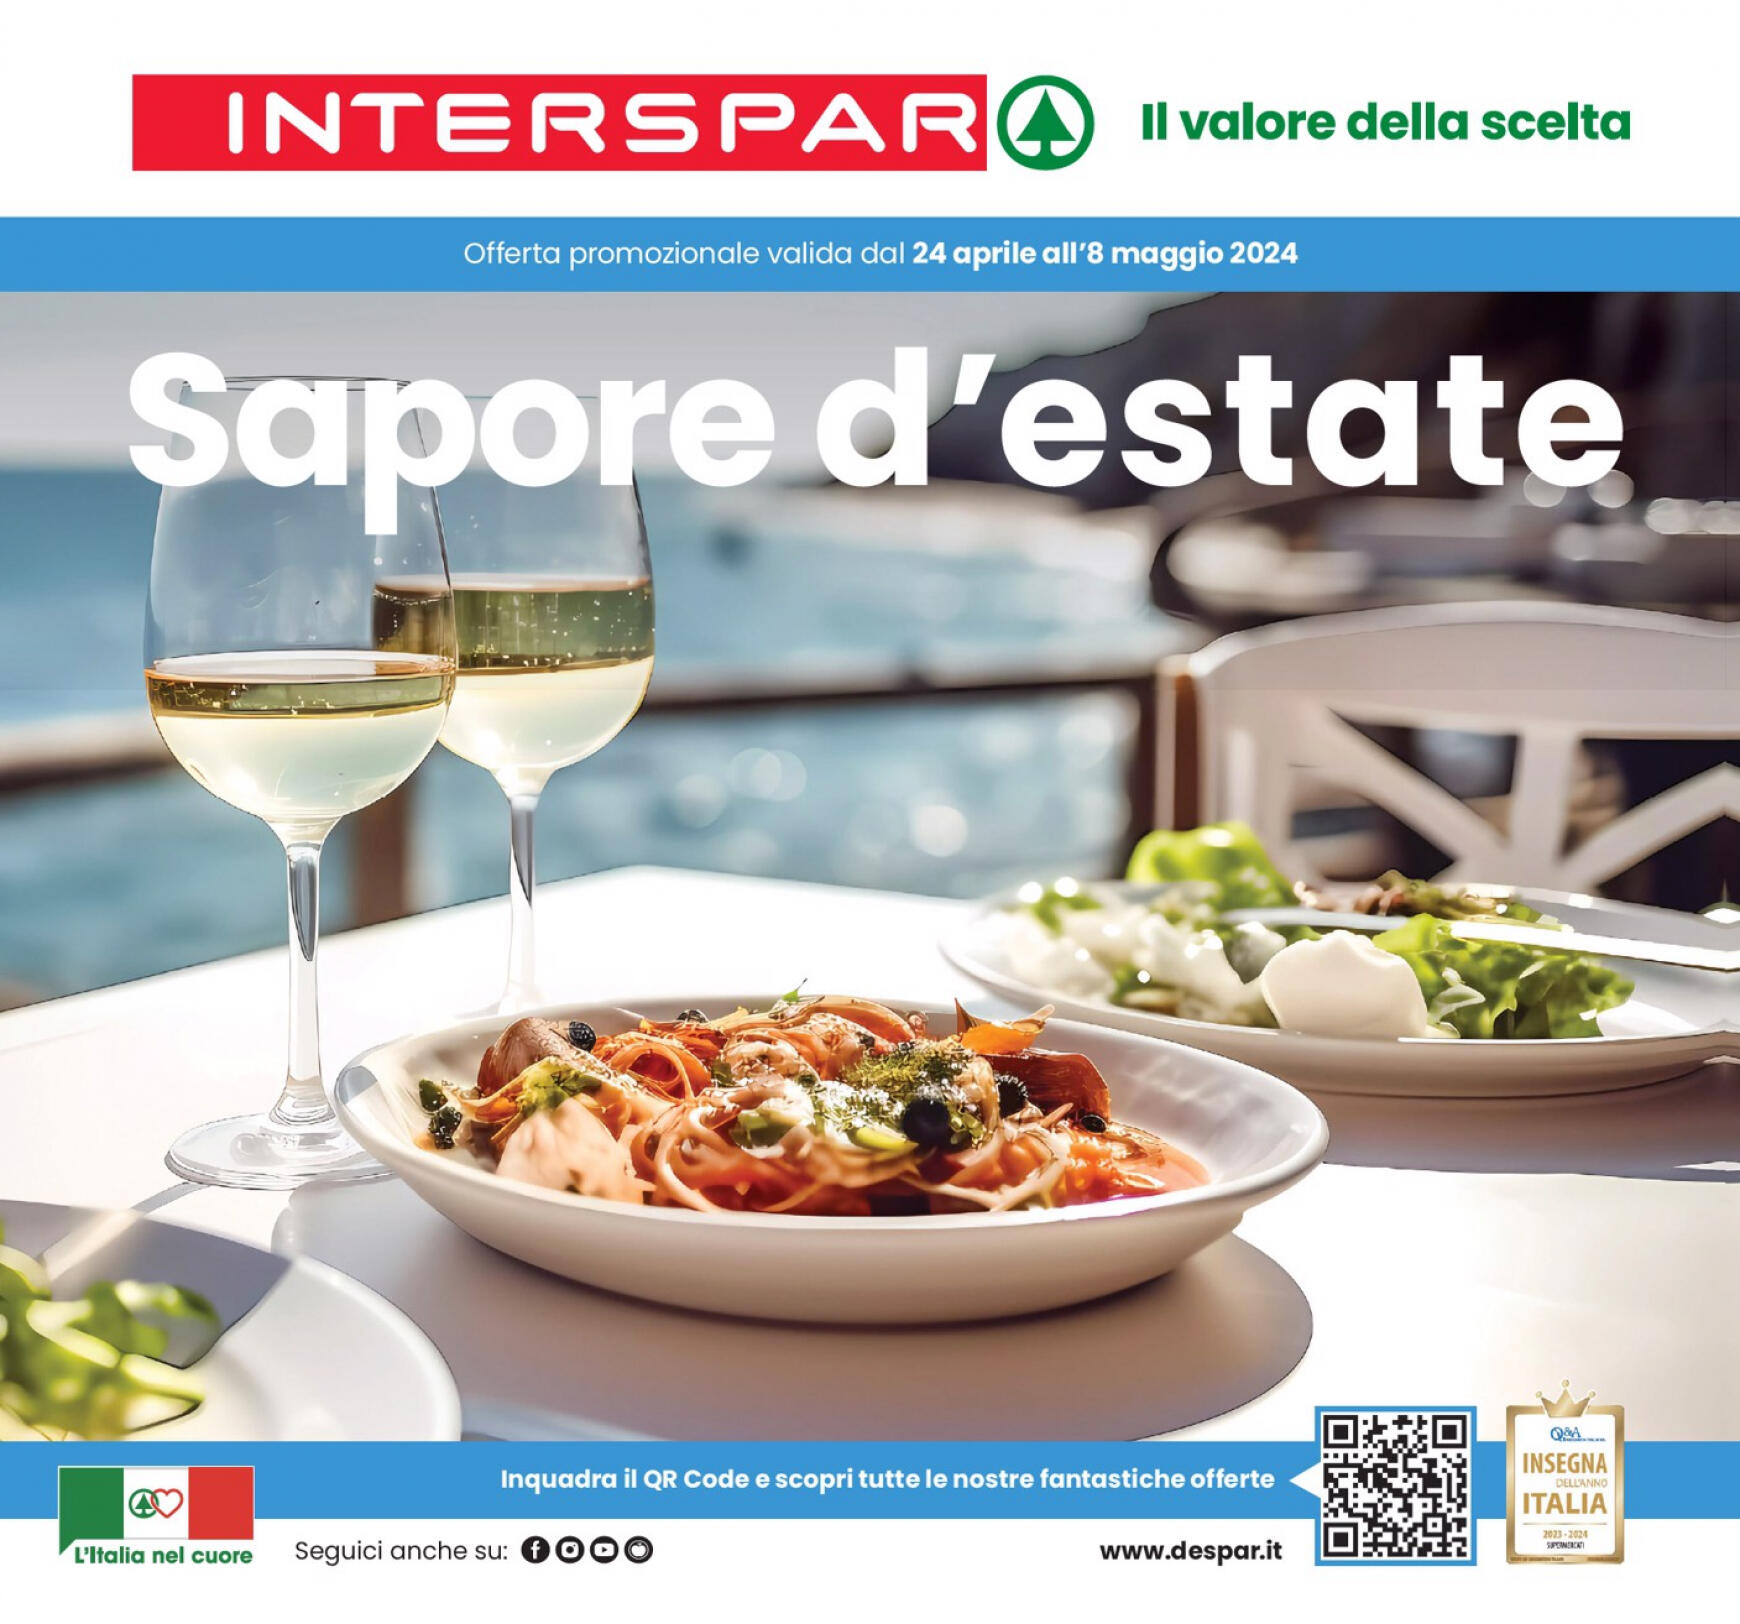 interspar - Nuovo volantino INTERSPAR - Sapore d'estate 24.04. - 08.05.